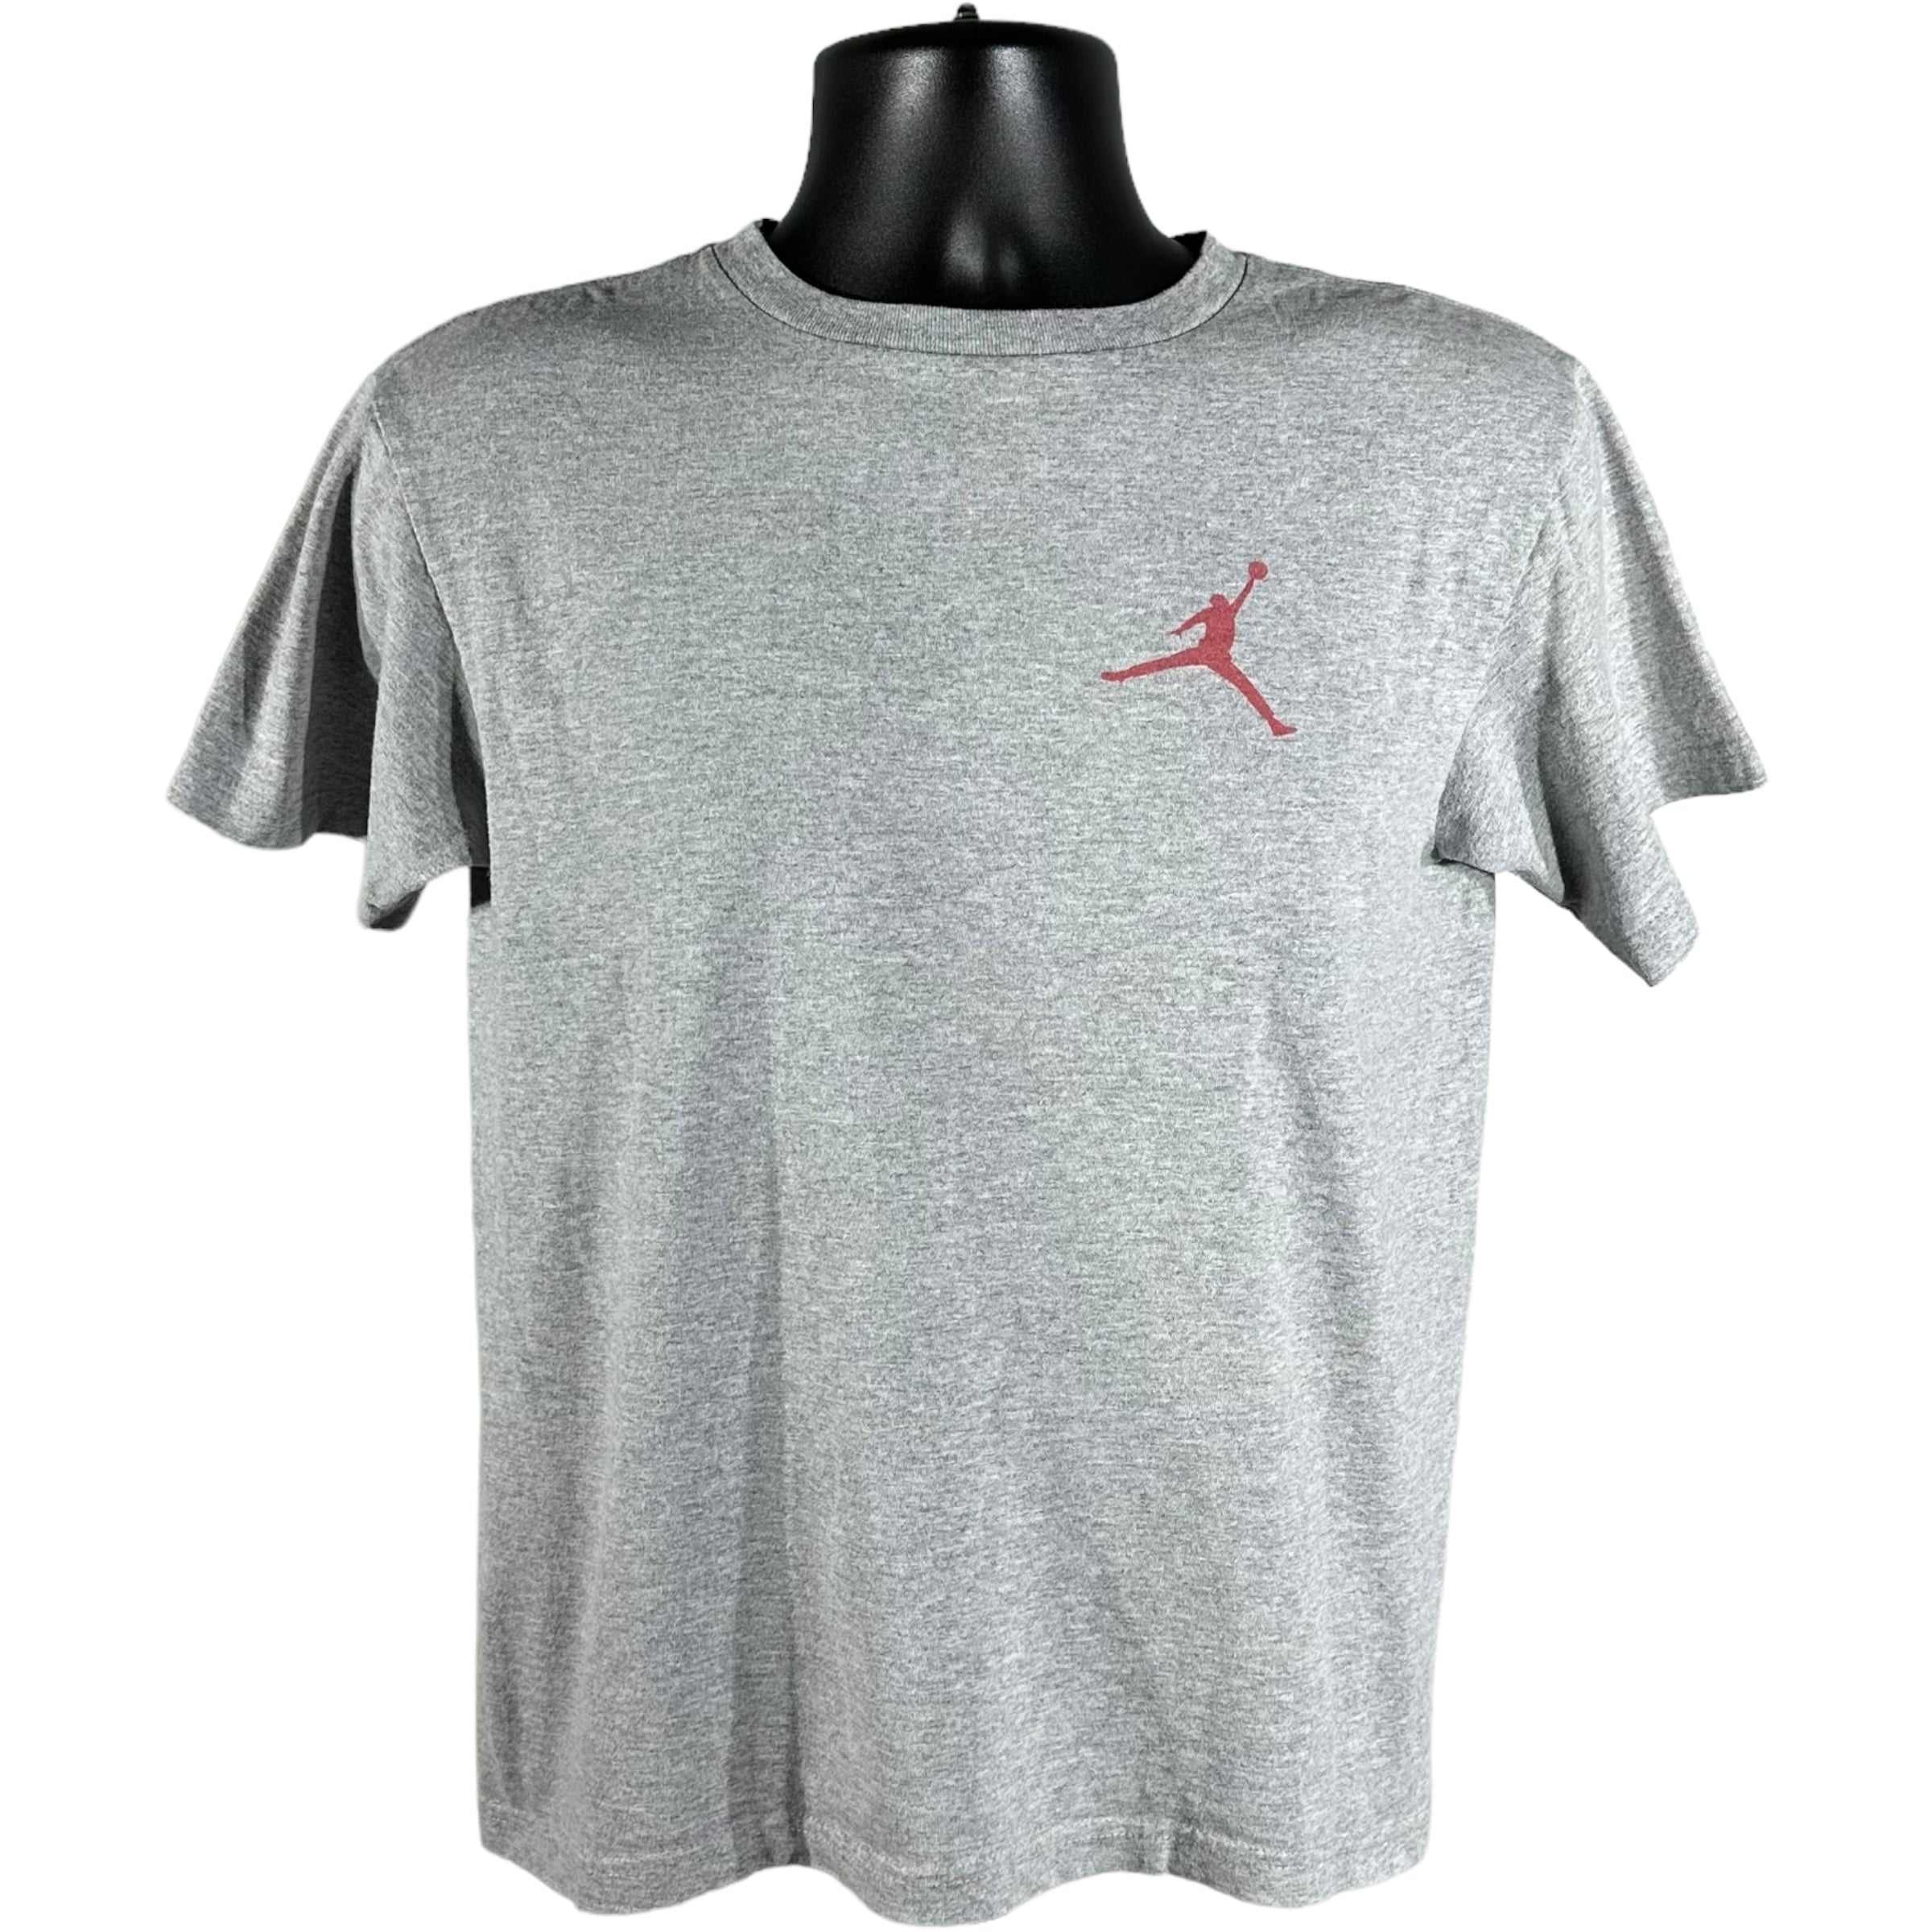 Nike Air Jordan Tee